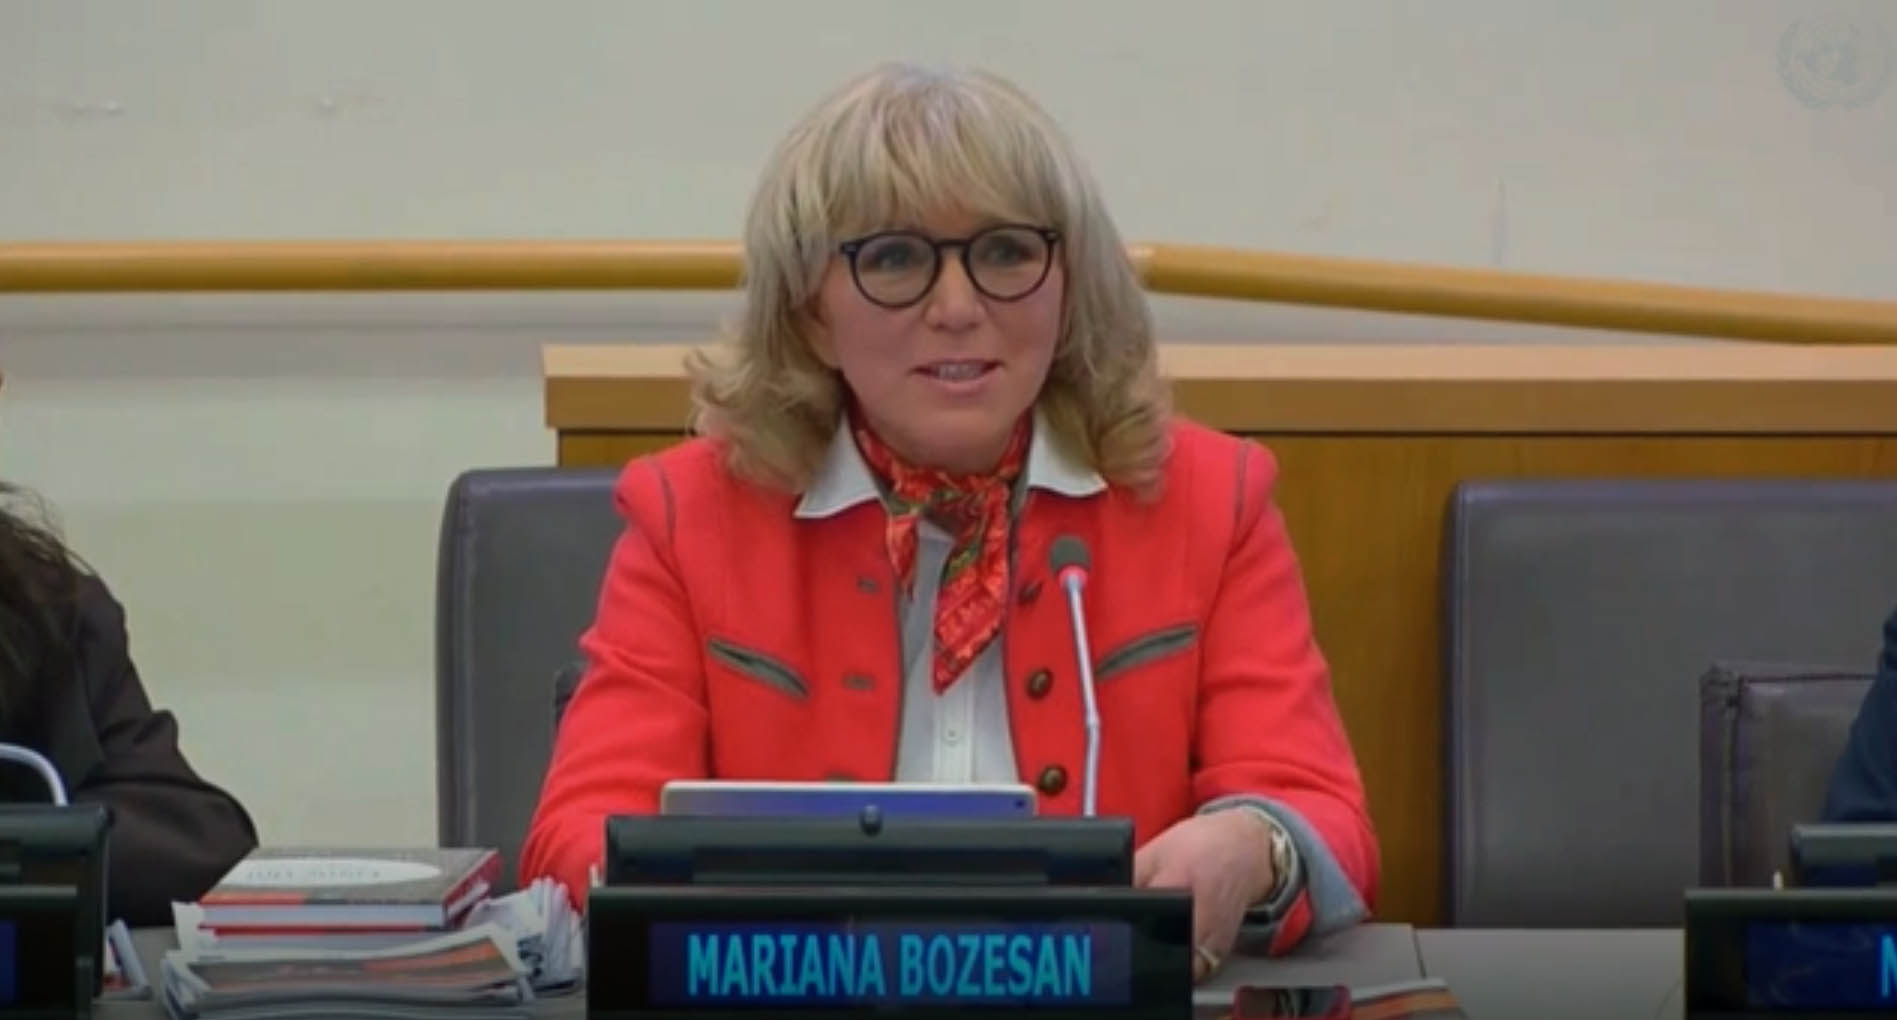 Dr. Mariana Bozesan gives Keynote at UN